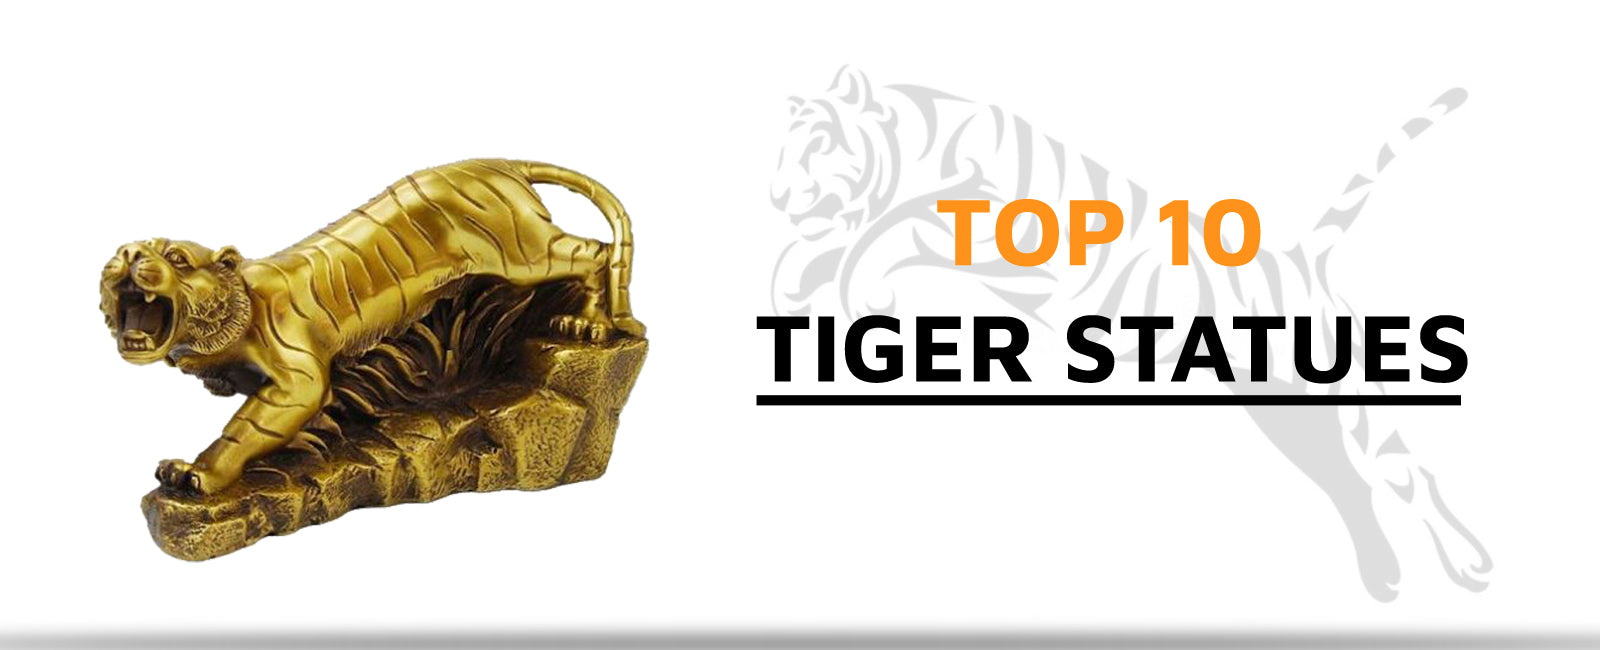 Top 10 Tiger Statues